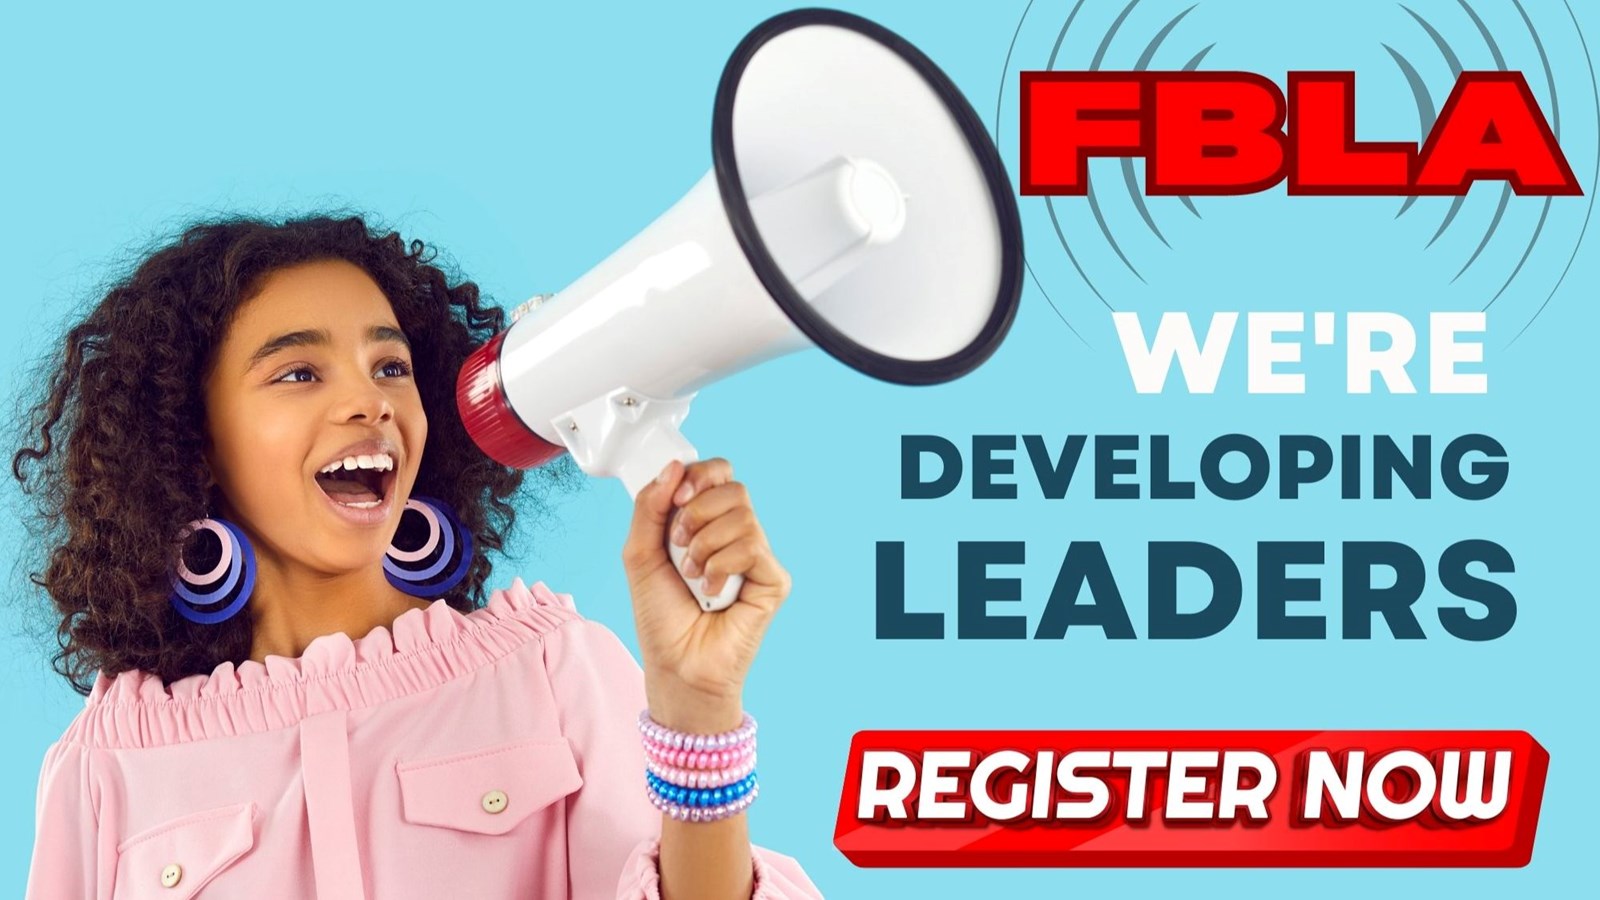 FBLA we're developing leaders. Register now.